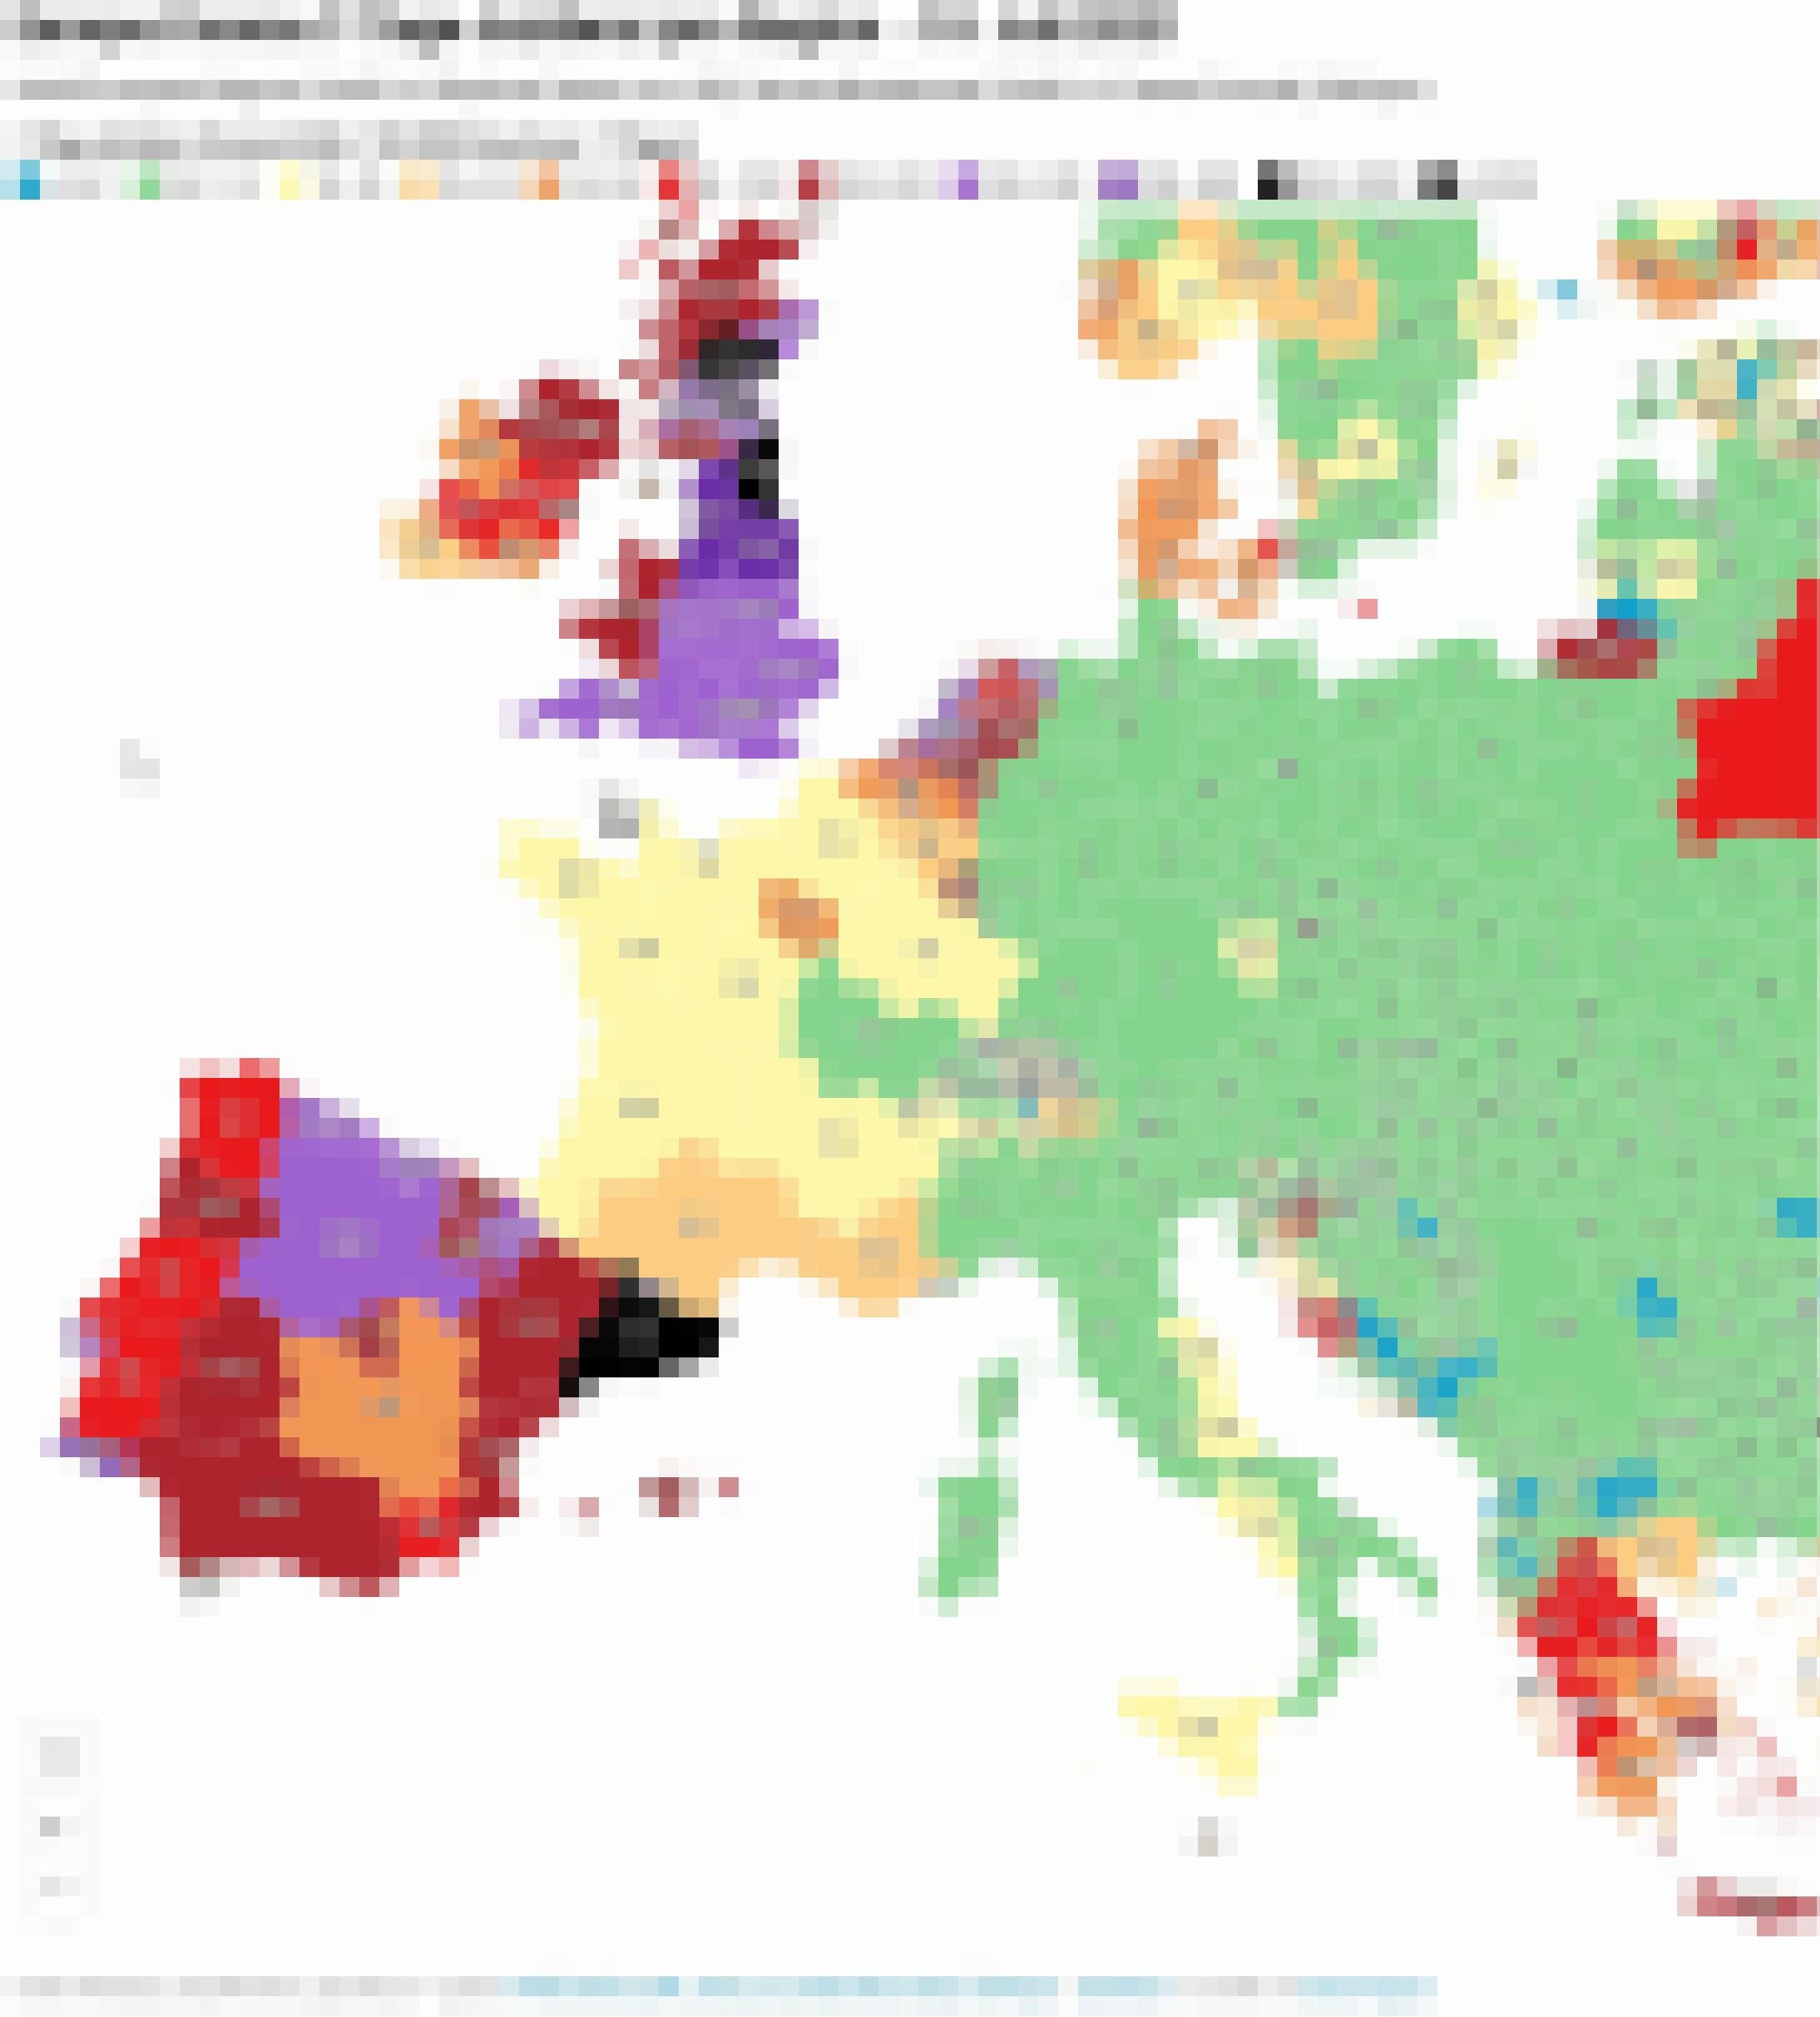 Europakarte der im Text beschriebenen Inzidenzen.